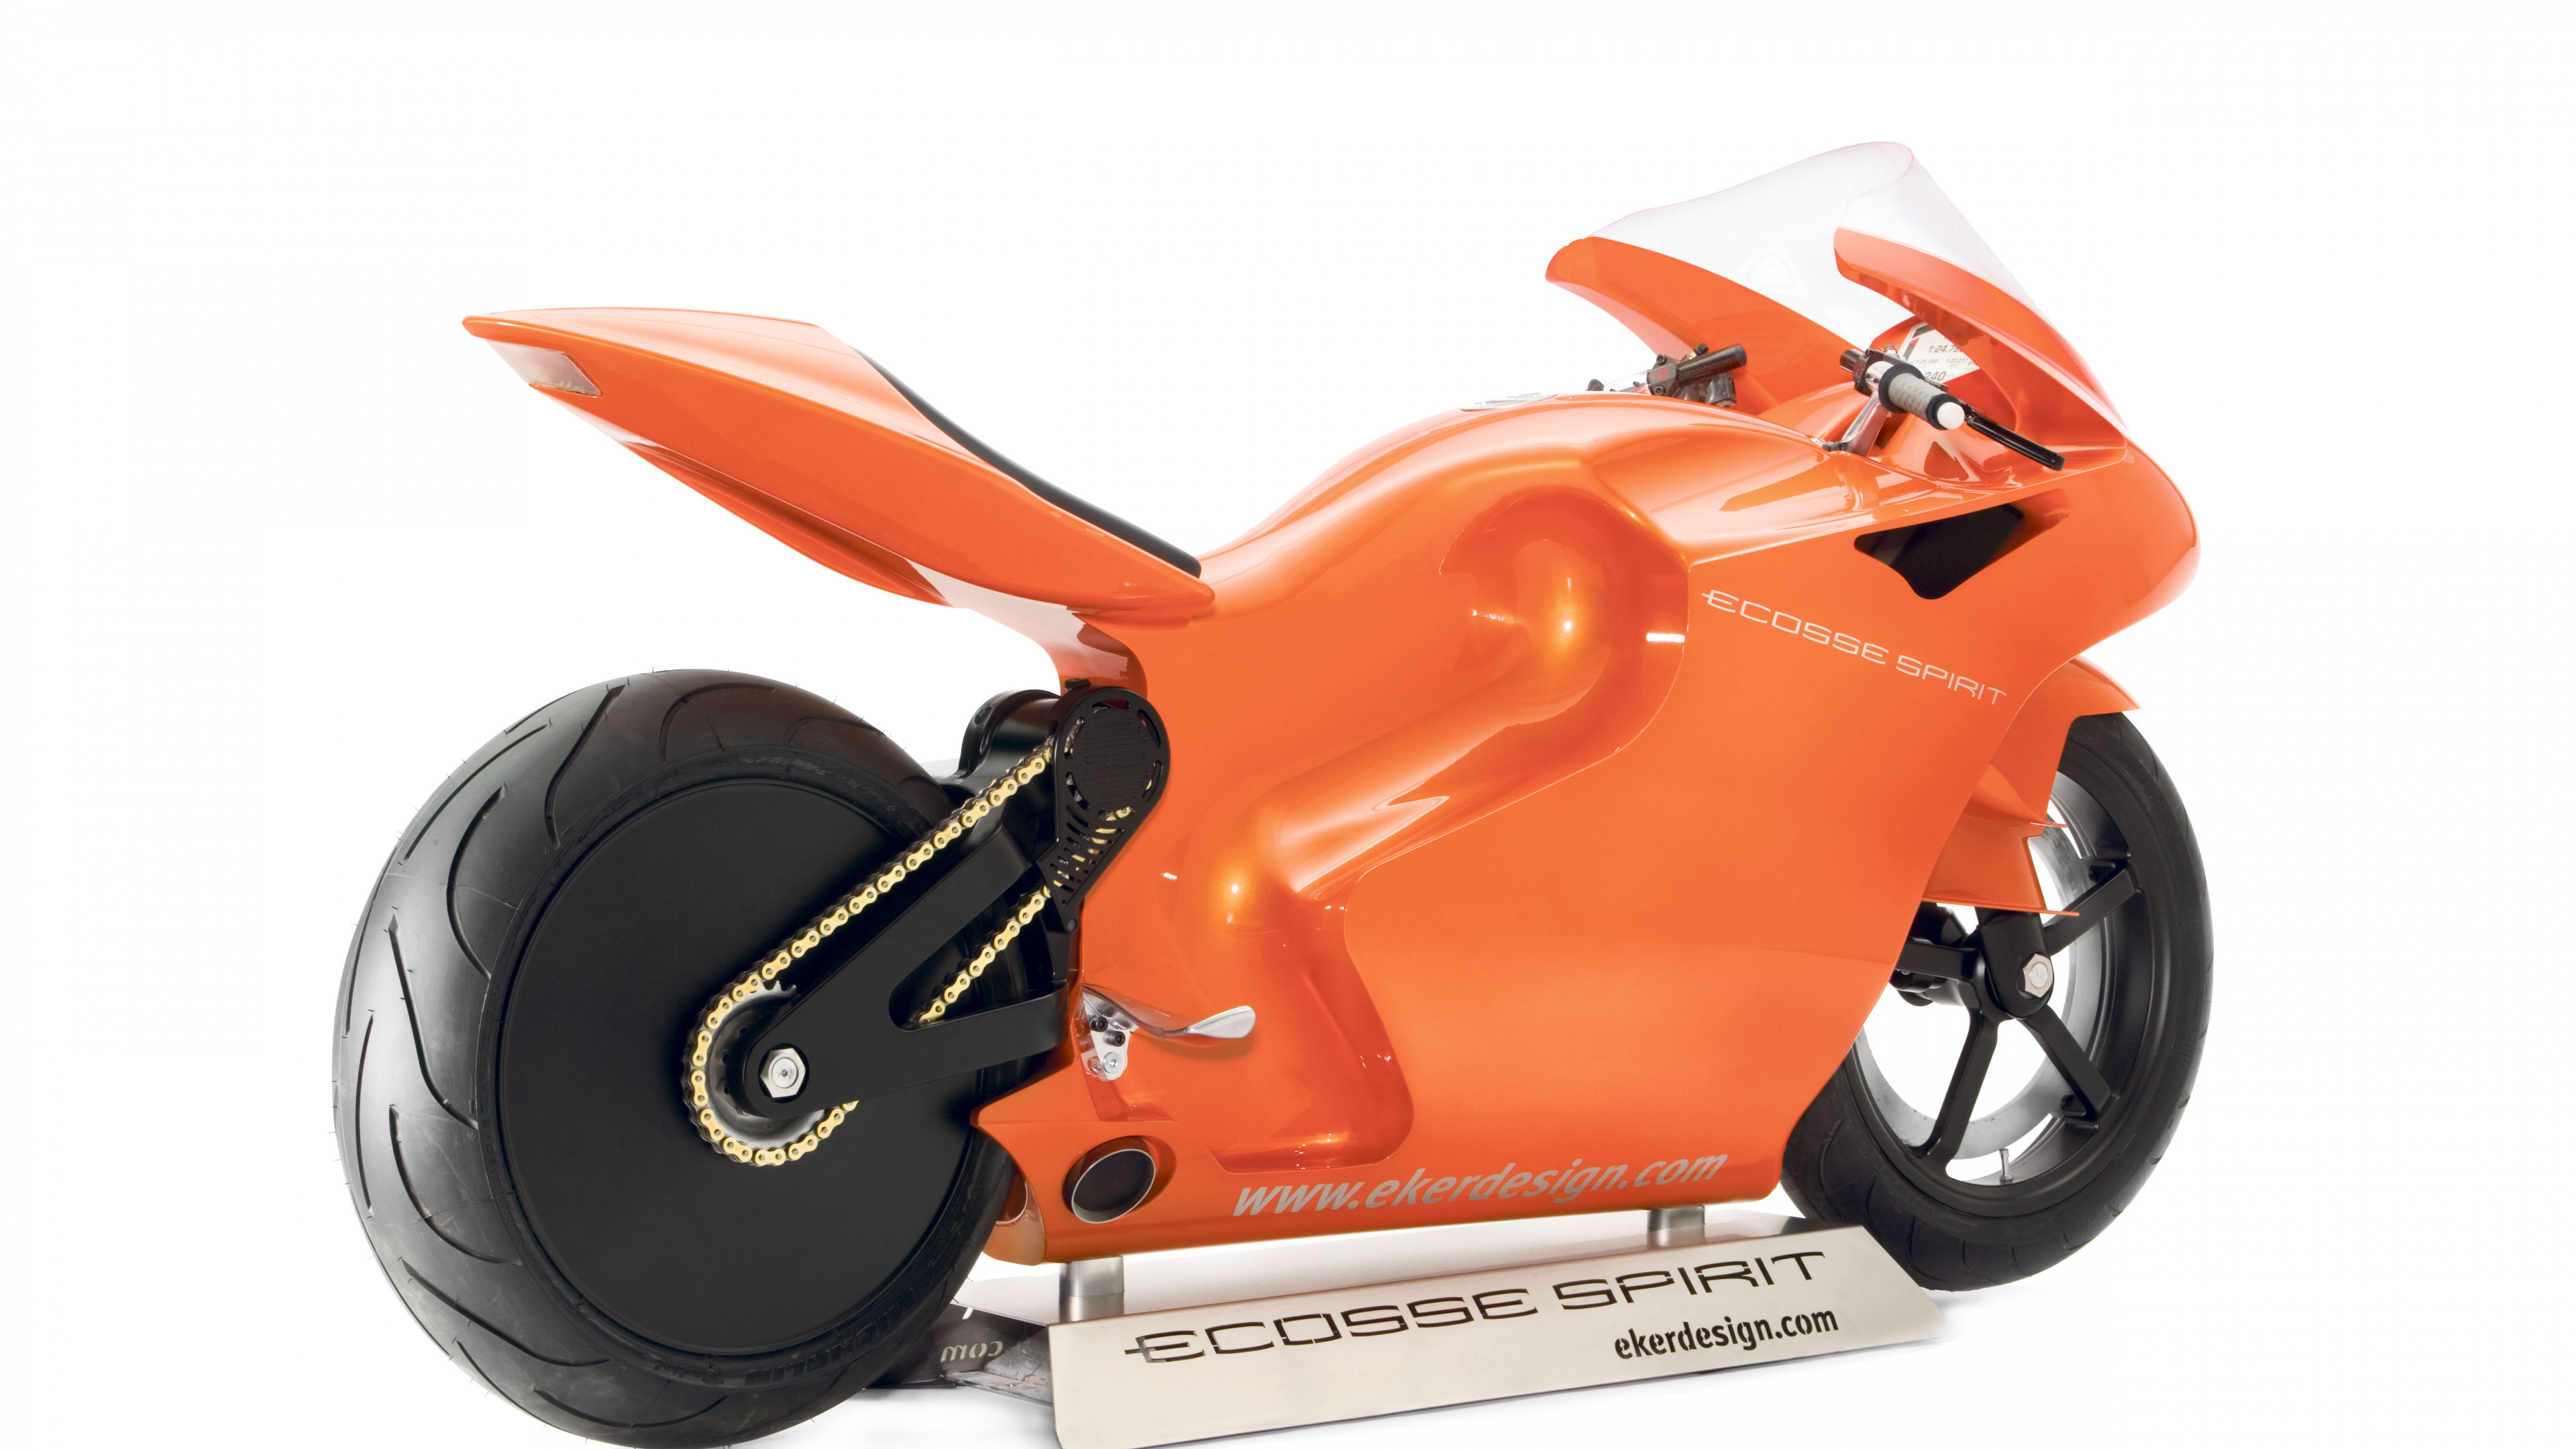 橙色, 定义的摩托车, 宝马摩托车, 然r750 壁纸 3840x2160 允许